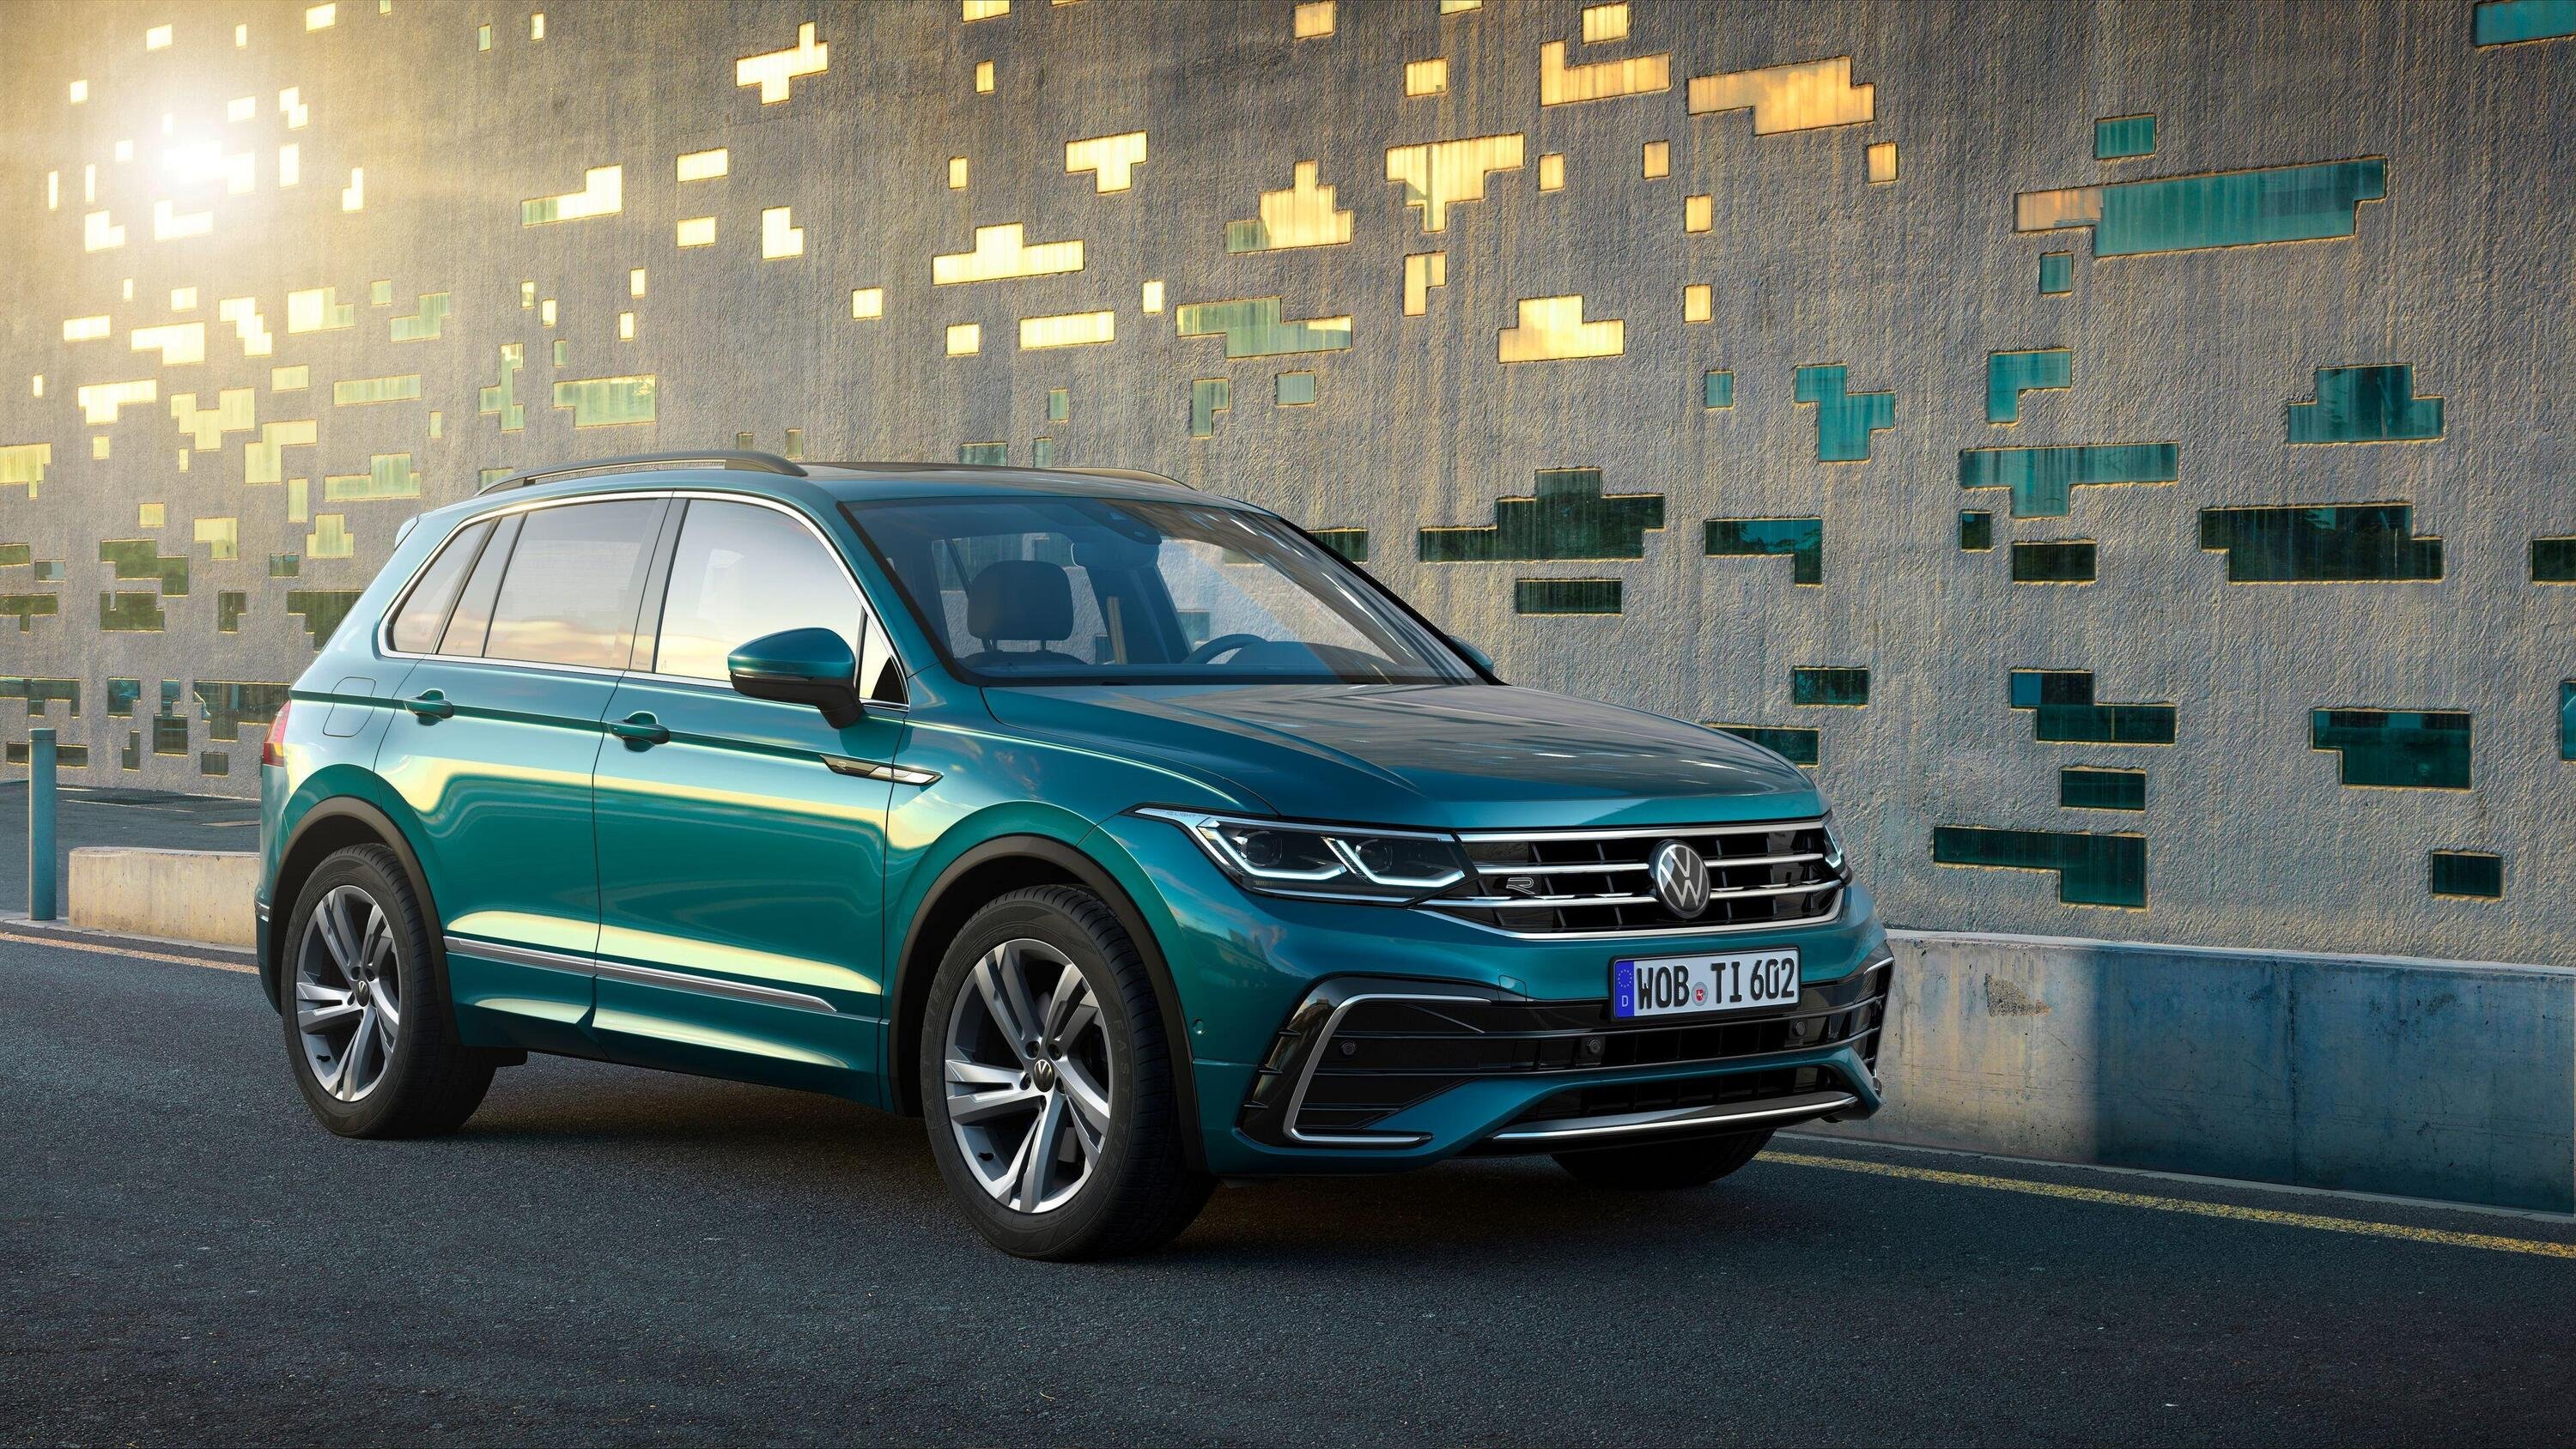 Listino prezzi aggiornato per la nuova Volkswagen Tiguan 2020 [Benzina e Diesel Euro6 con bonus, poi Ibrida]